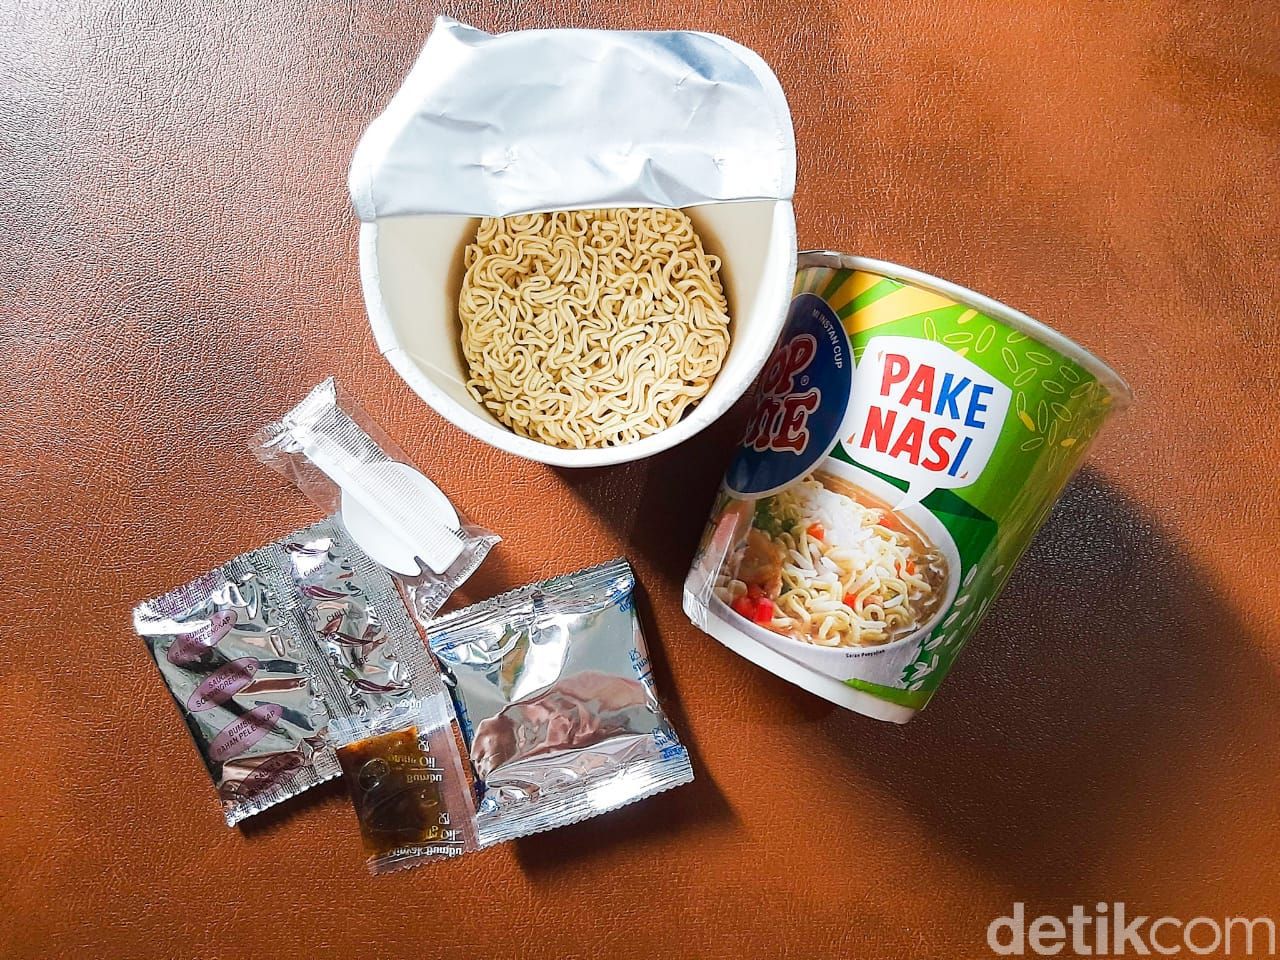 Sensasi Makan Pop Mie Pake Nasi